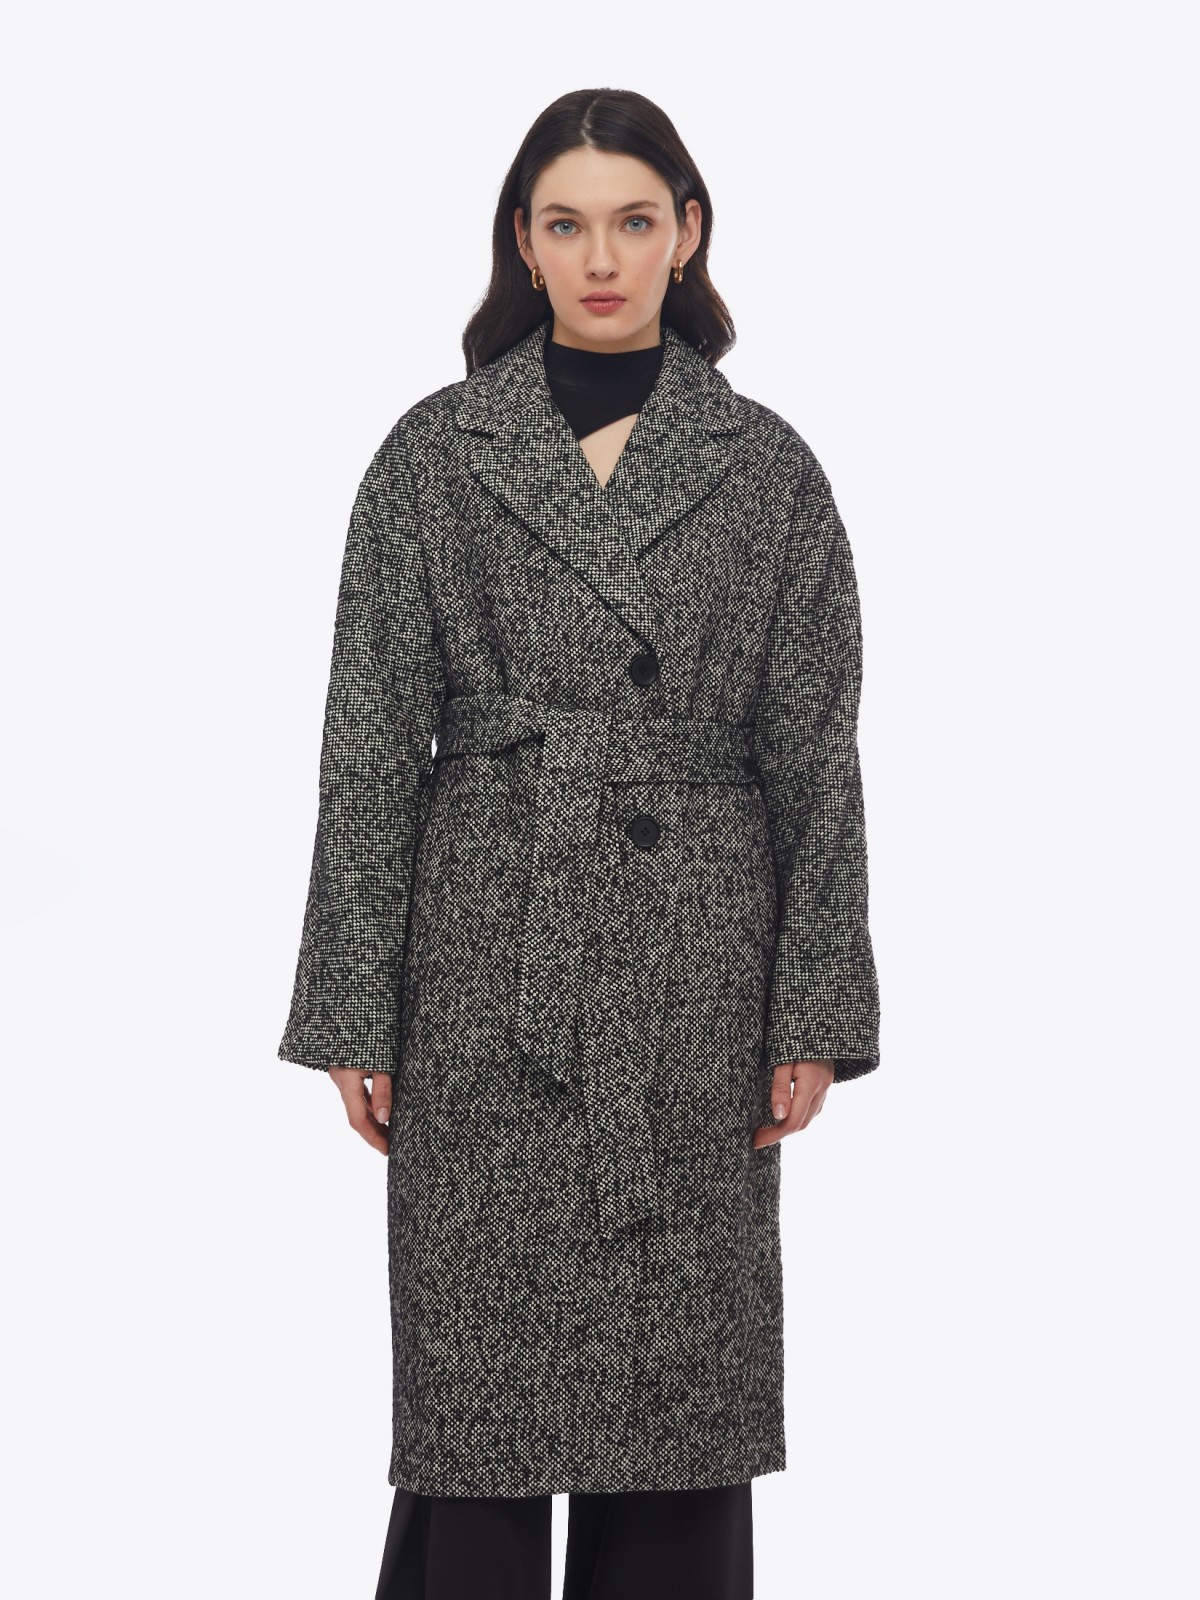 Длинное пальто без утеплителя с шерстю и с поясом на талии zolla 02412580Y154, цвет черный, размер XS - фото 4